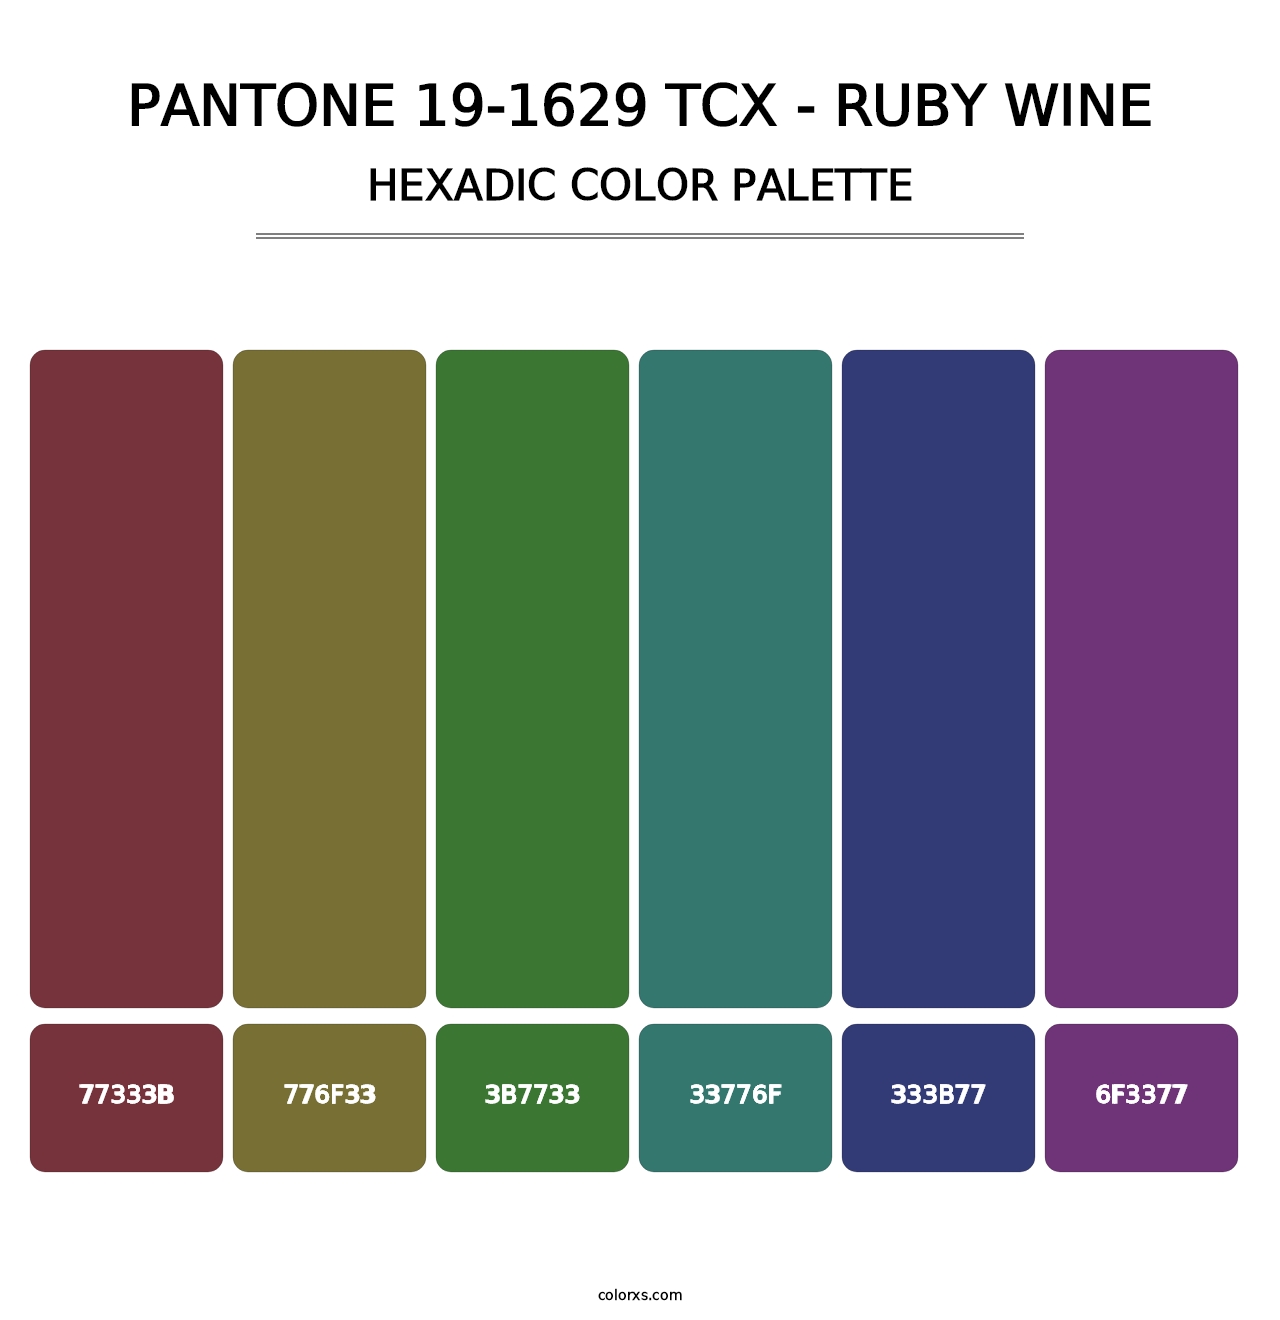 PANTONE 19-1629 TCX - Ruby Wine - Hexadic Color Palette